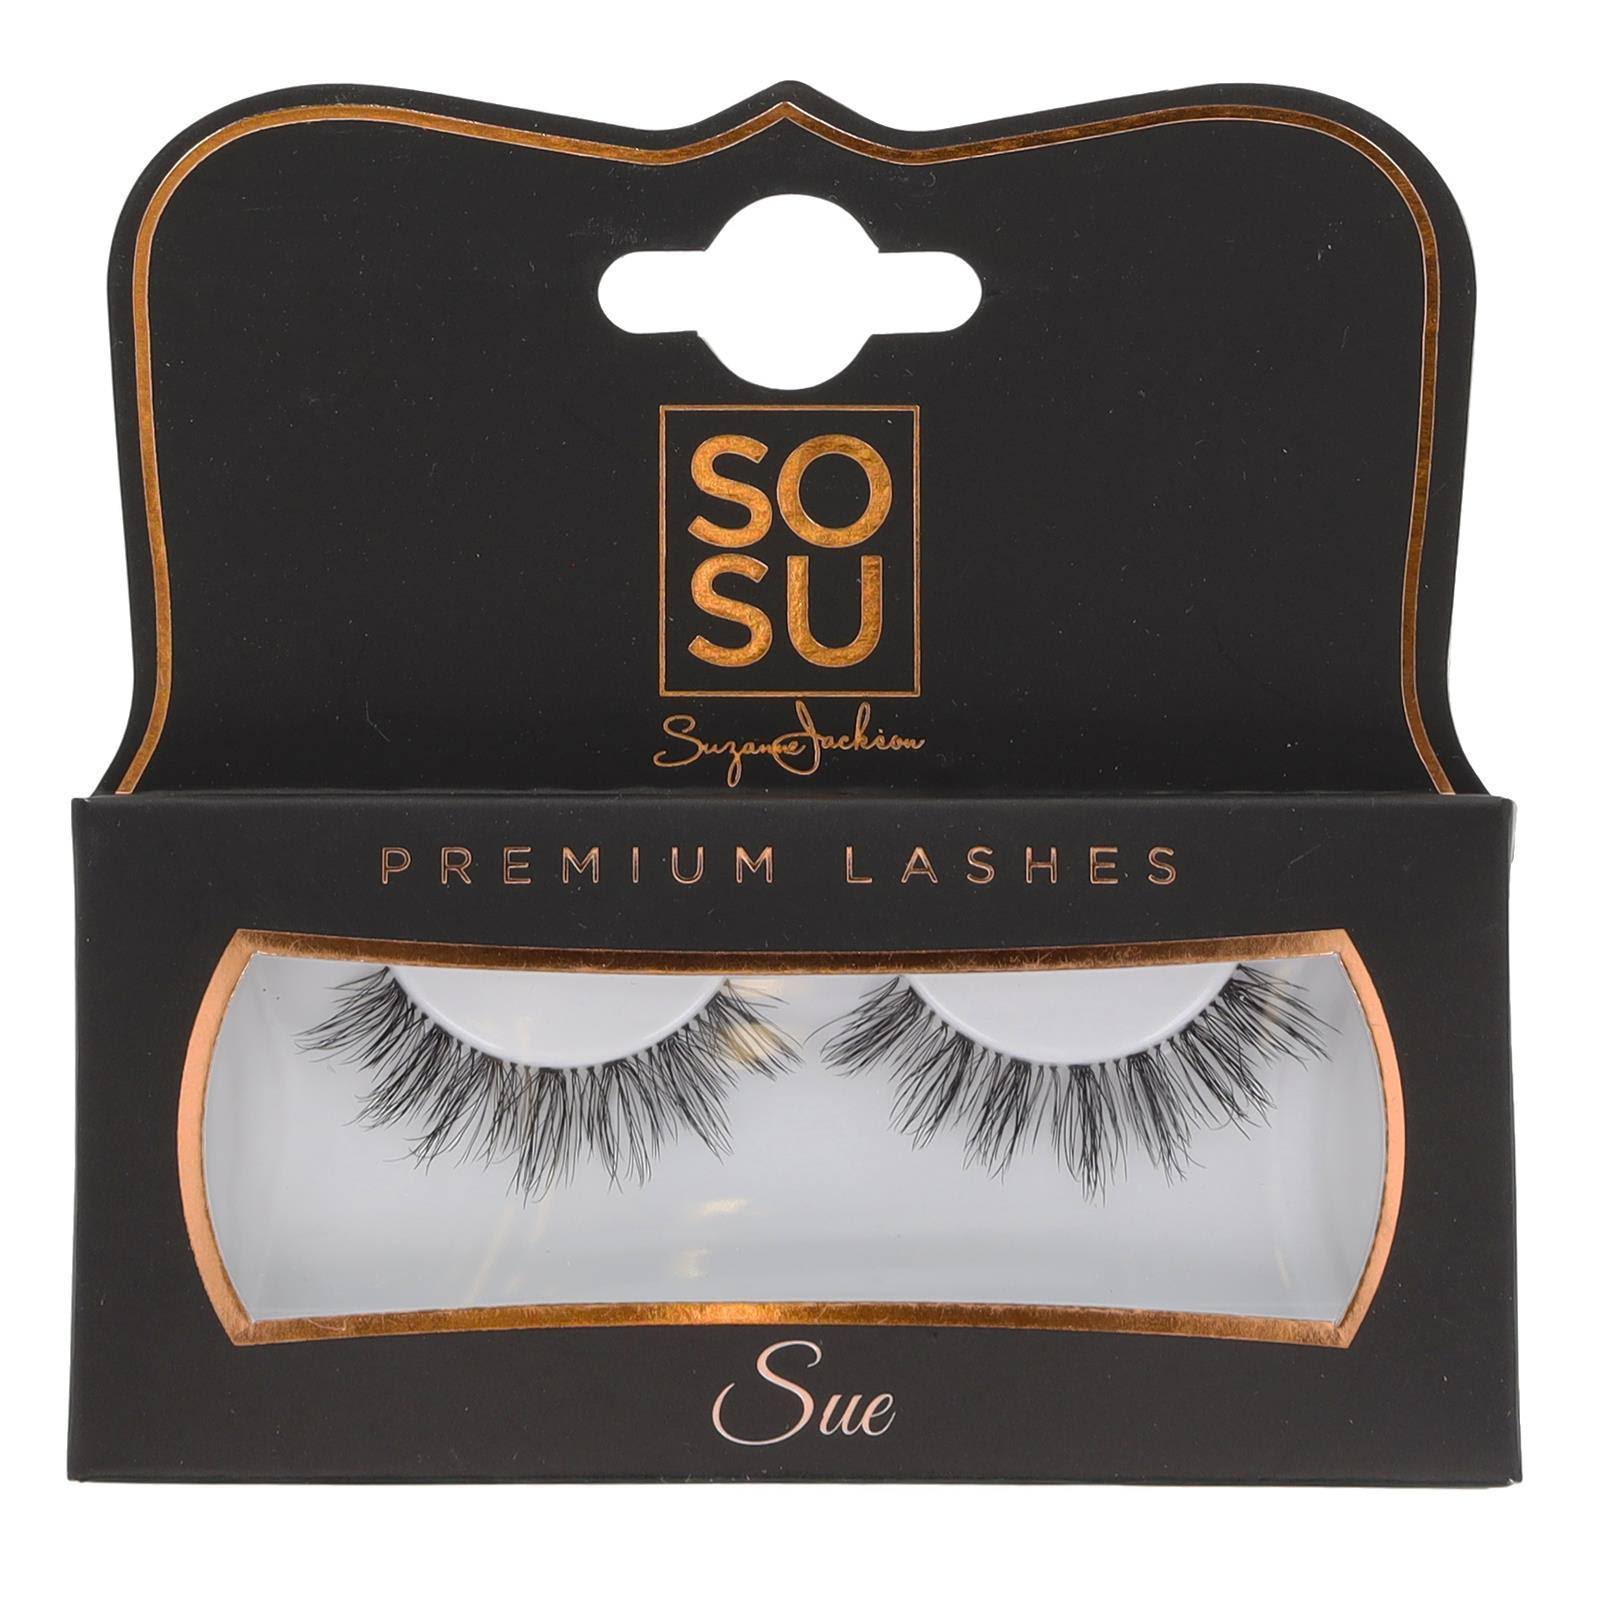 SOSU Premium Lashes - Sue